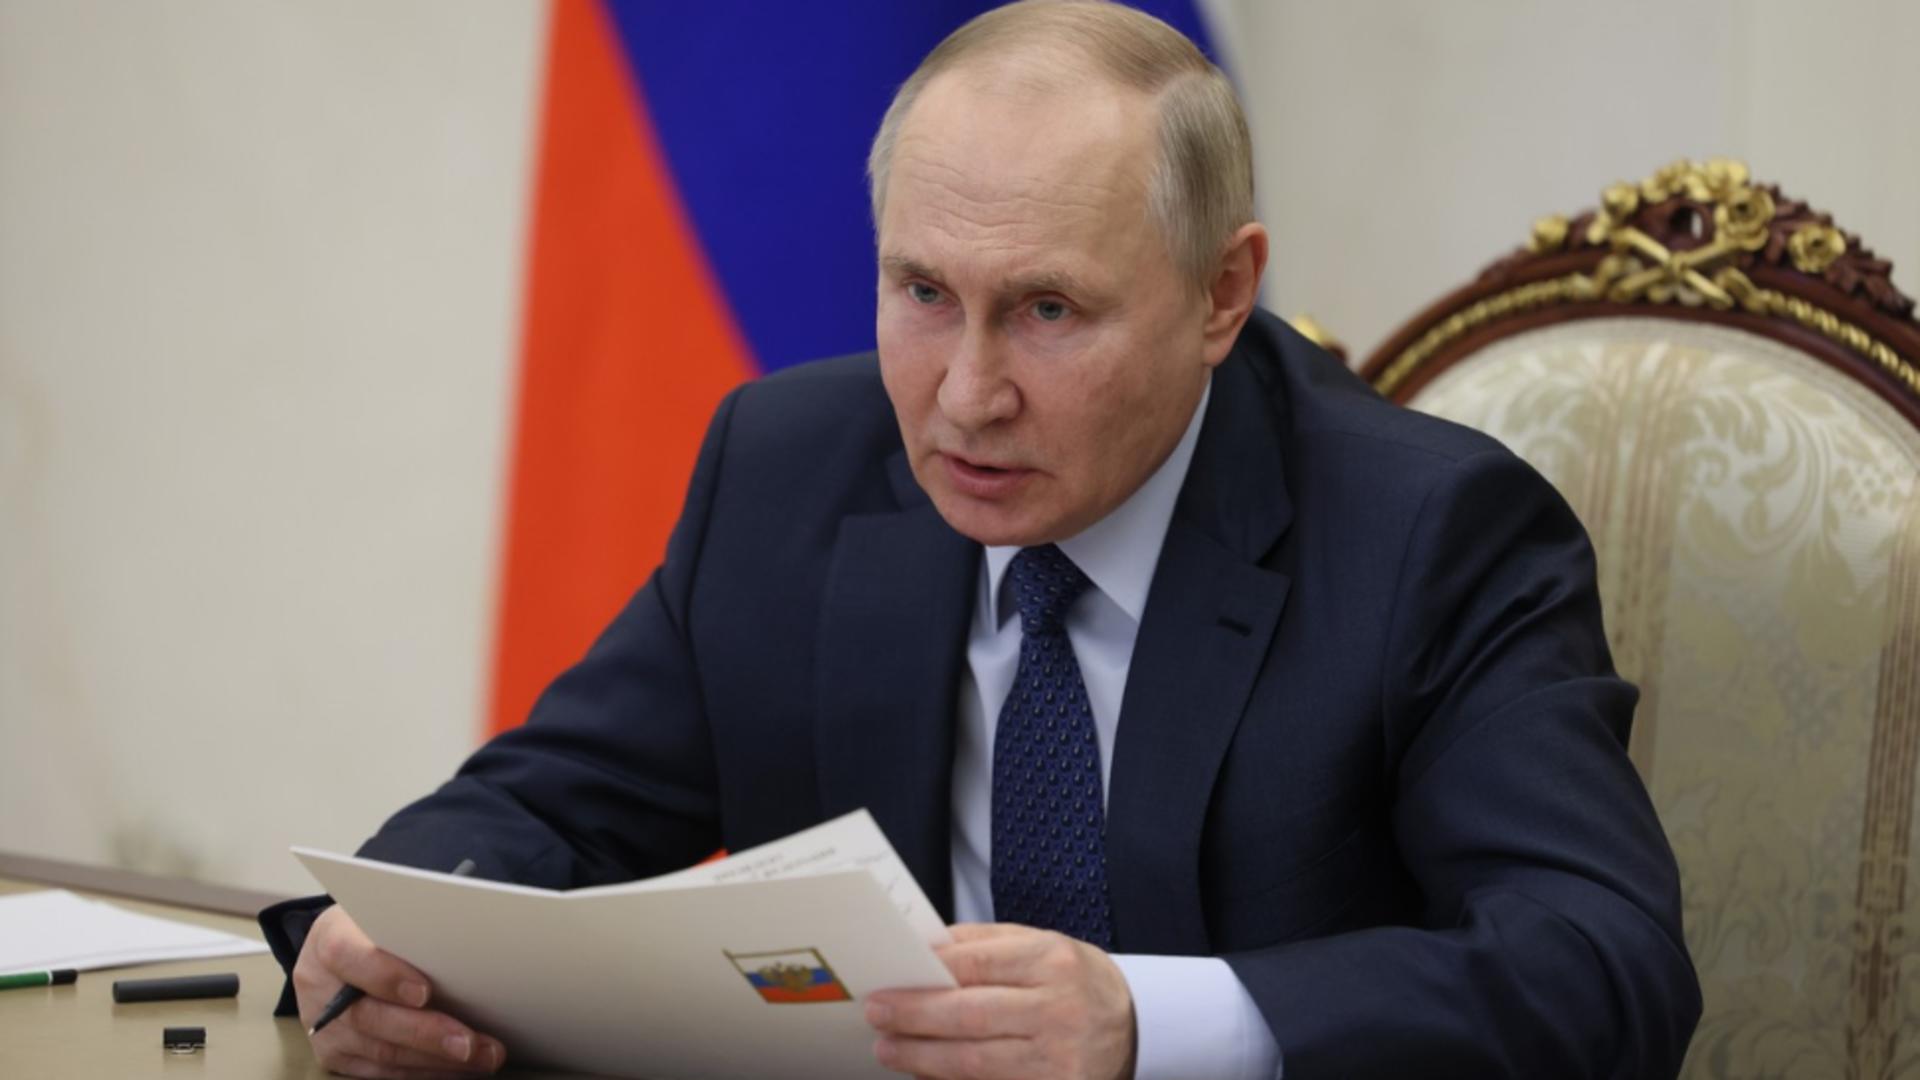 Vladimir Putin coordonează centrul operațional de urgență de la Kremlin, în urma atacului cu 40 de morți